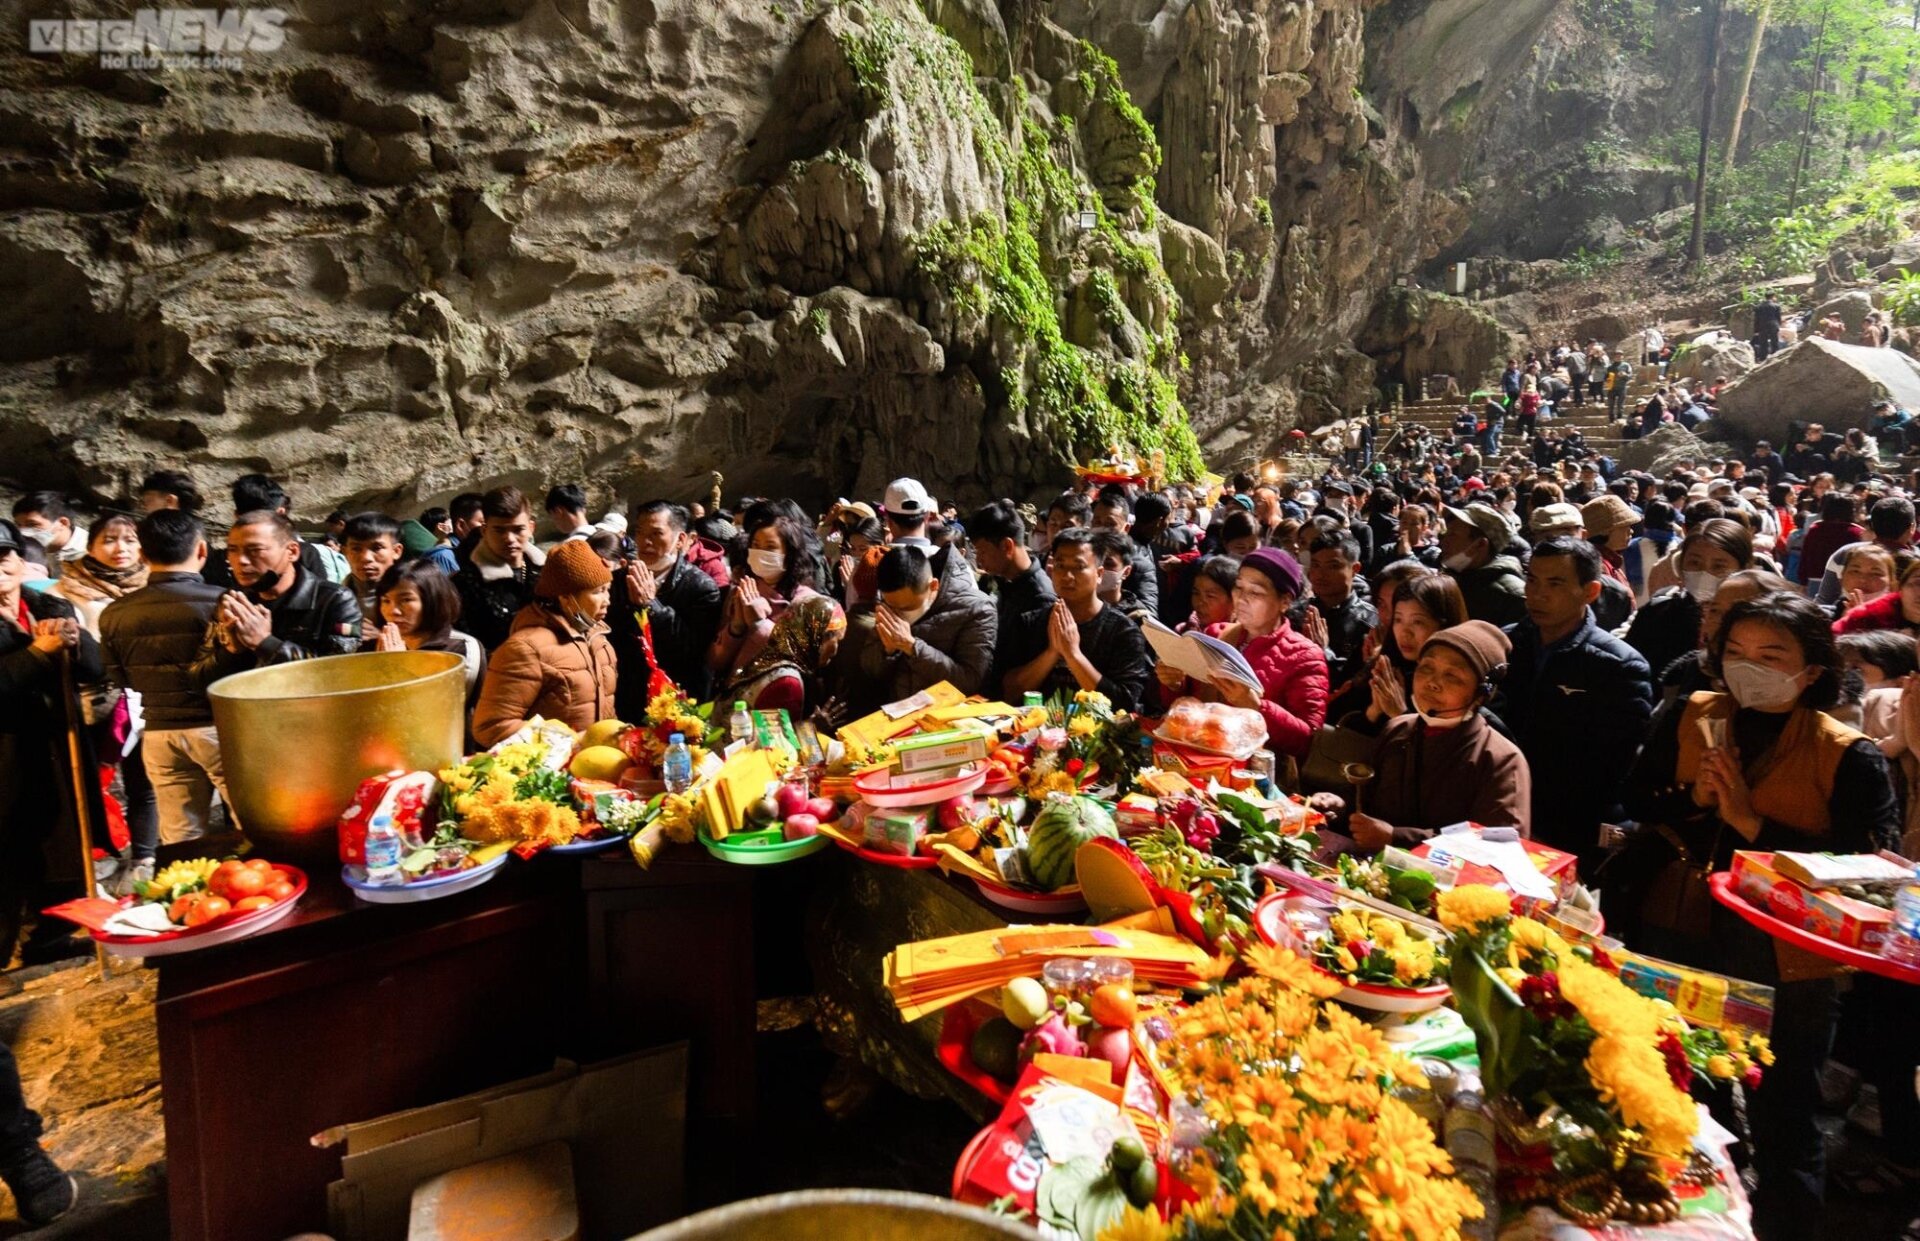 Tùy theo mục đích đi du lịch chùa Hương của bạn để mua đồ lễ cho phù hợp. (Ảnh: Minh Đức)